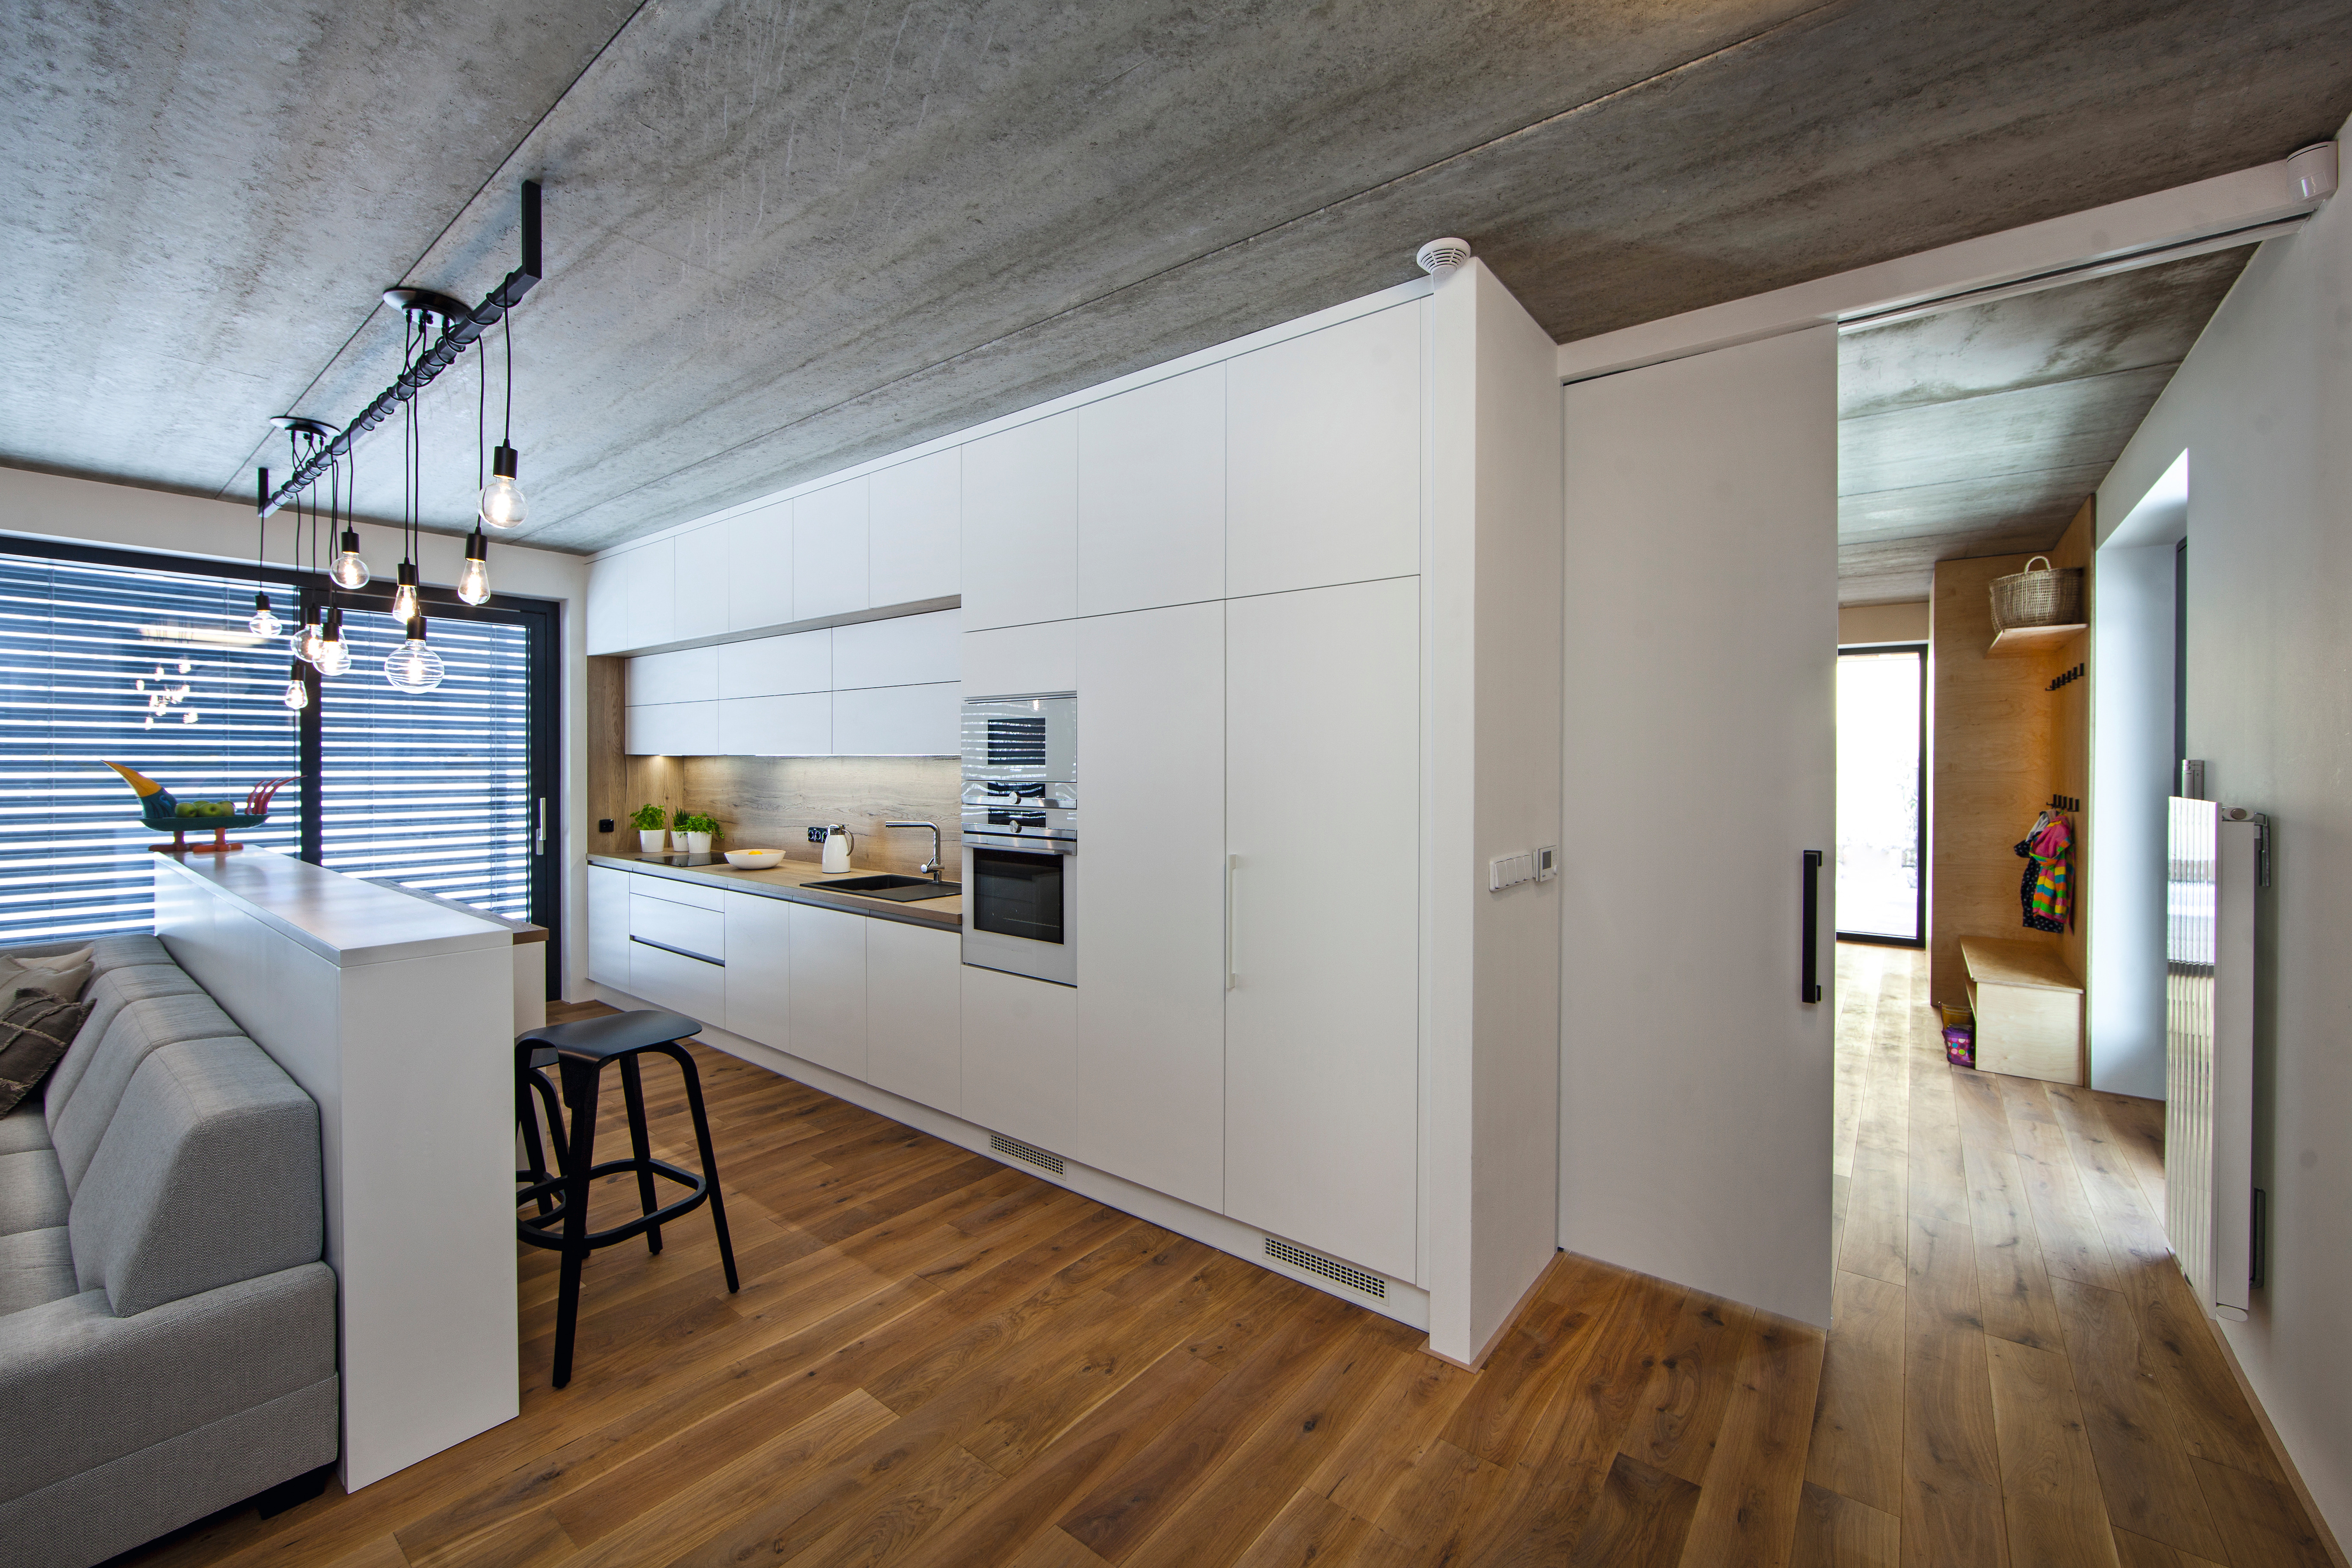 Účelně navržený design domu s dominantní kuchyní, kde dřevo a industriální prvky působí poutavým dojmem.